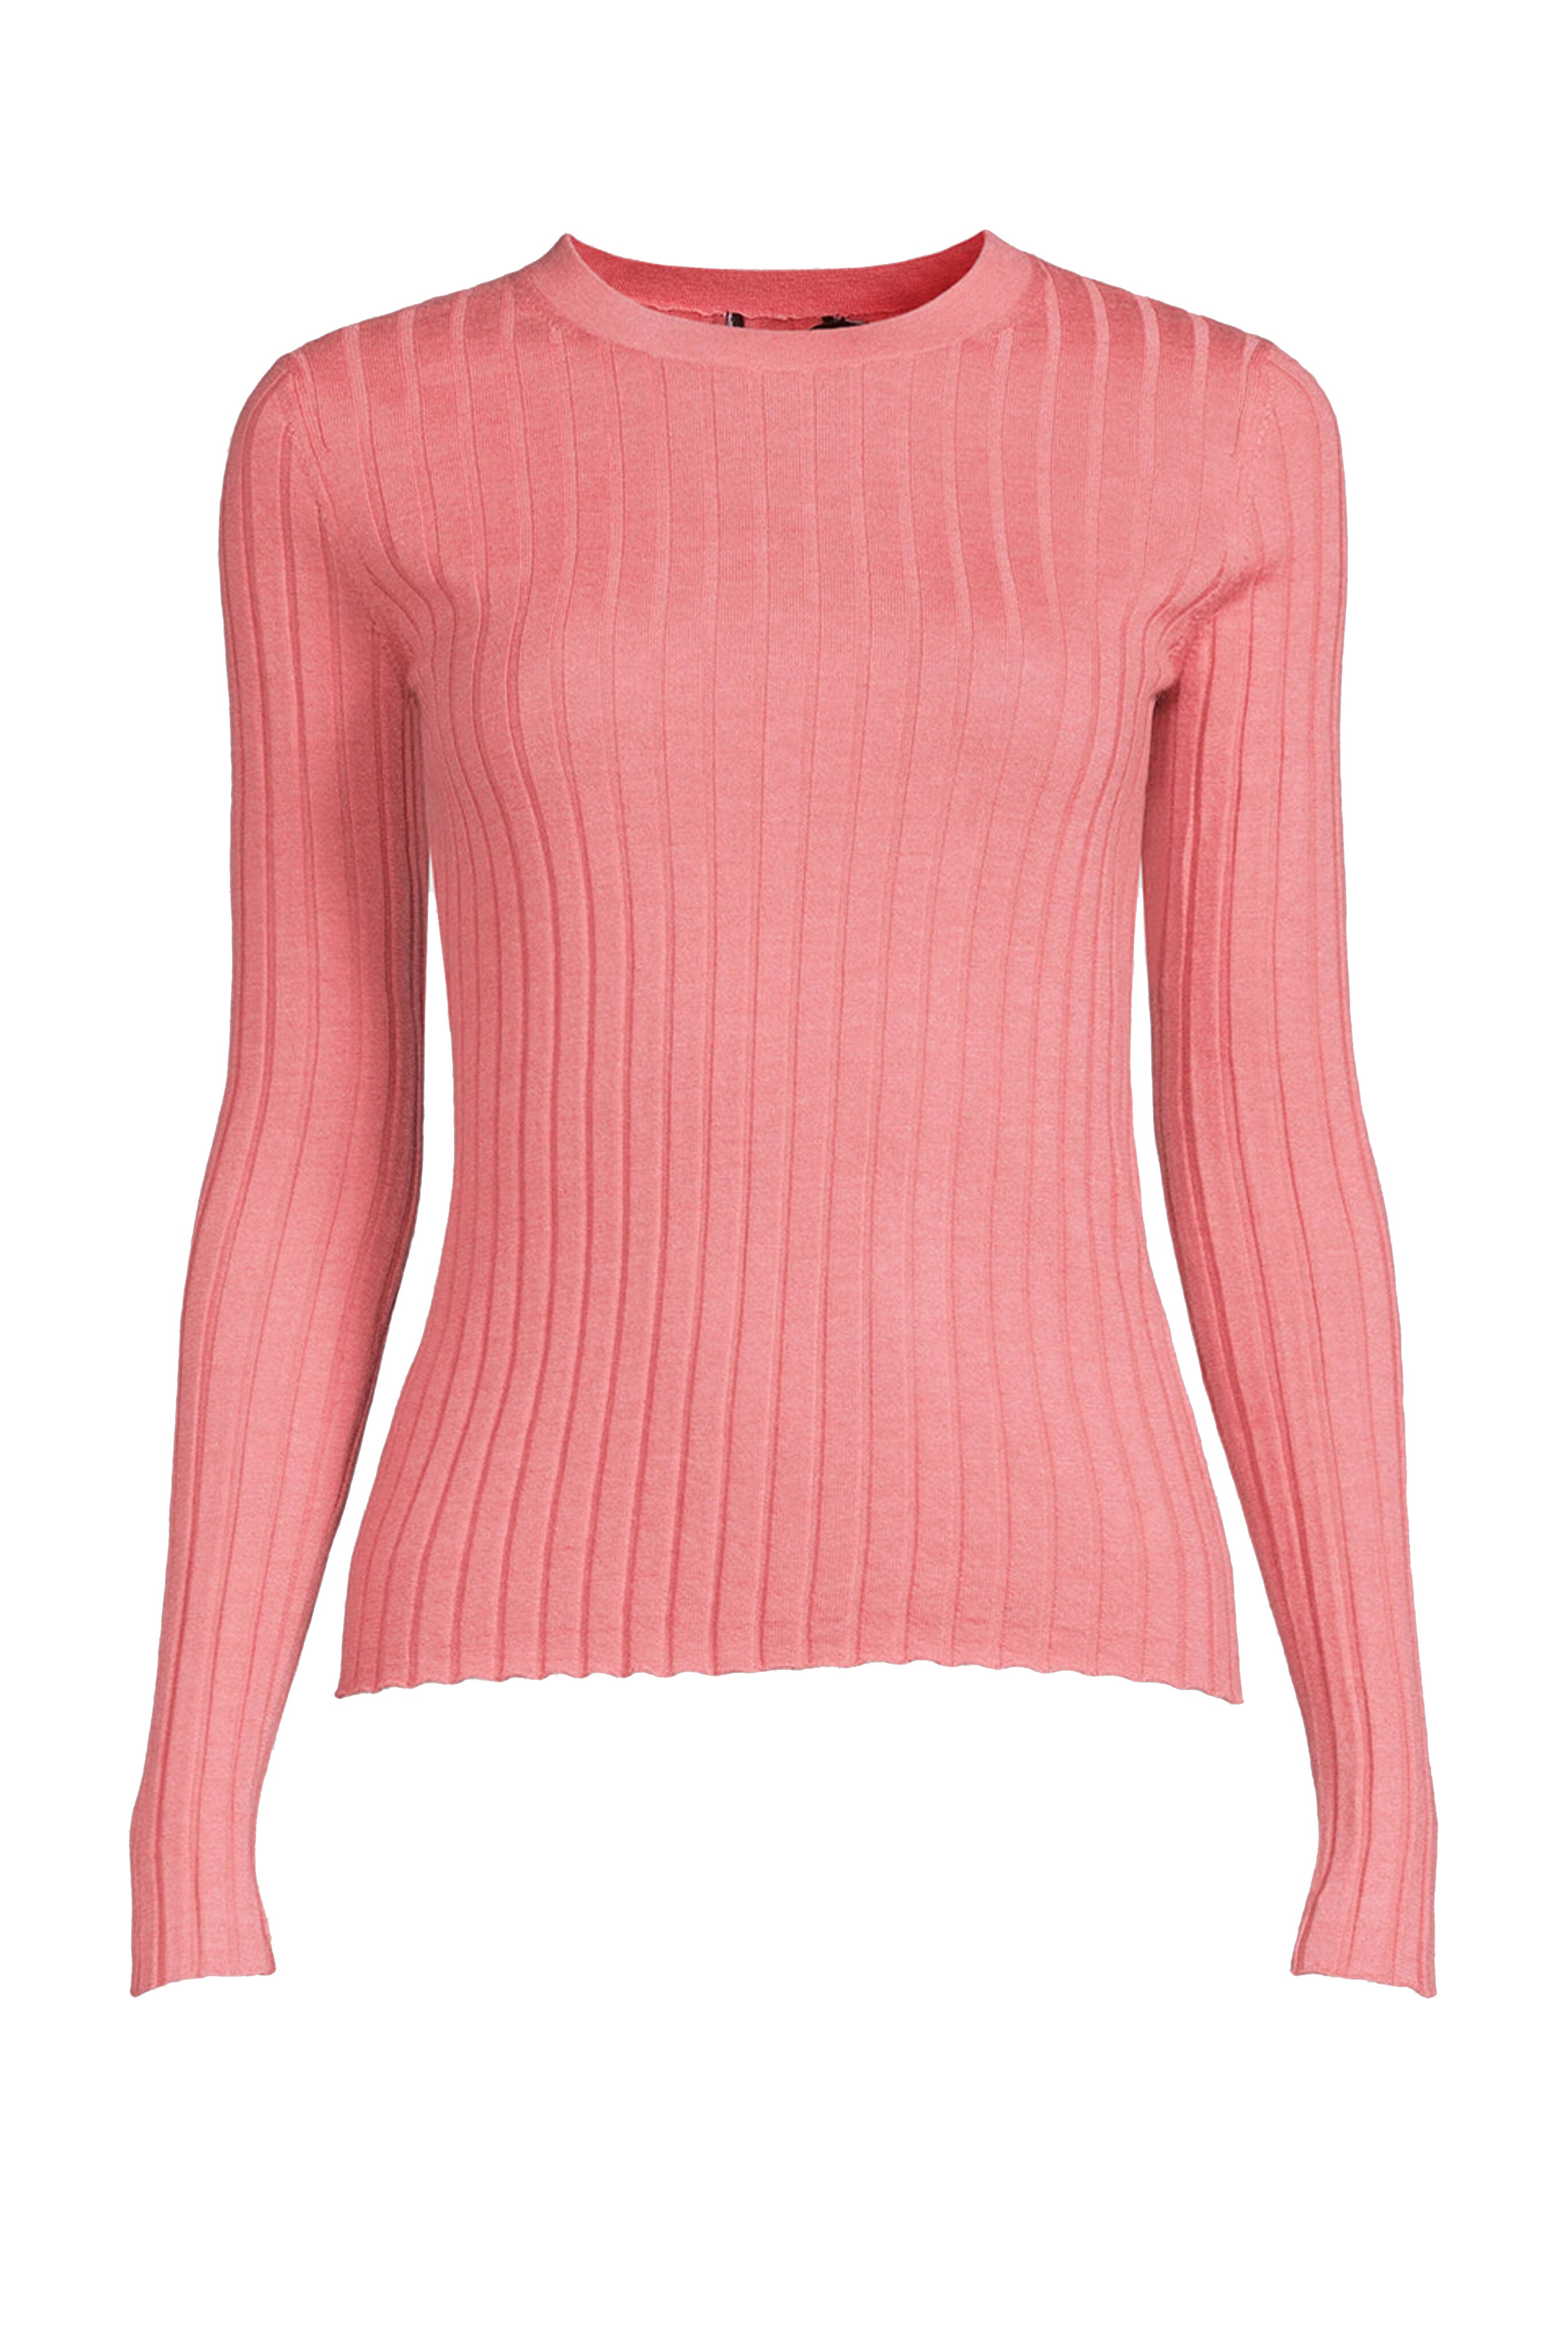 Koja Cashmere Sweater